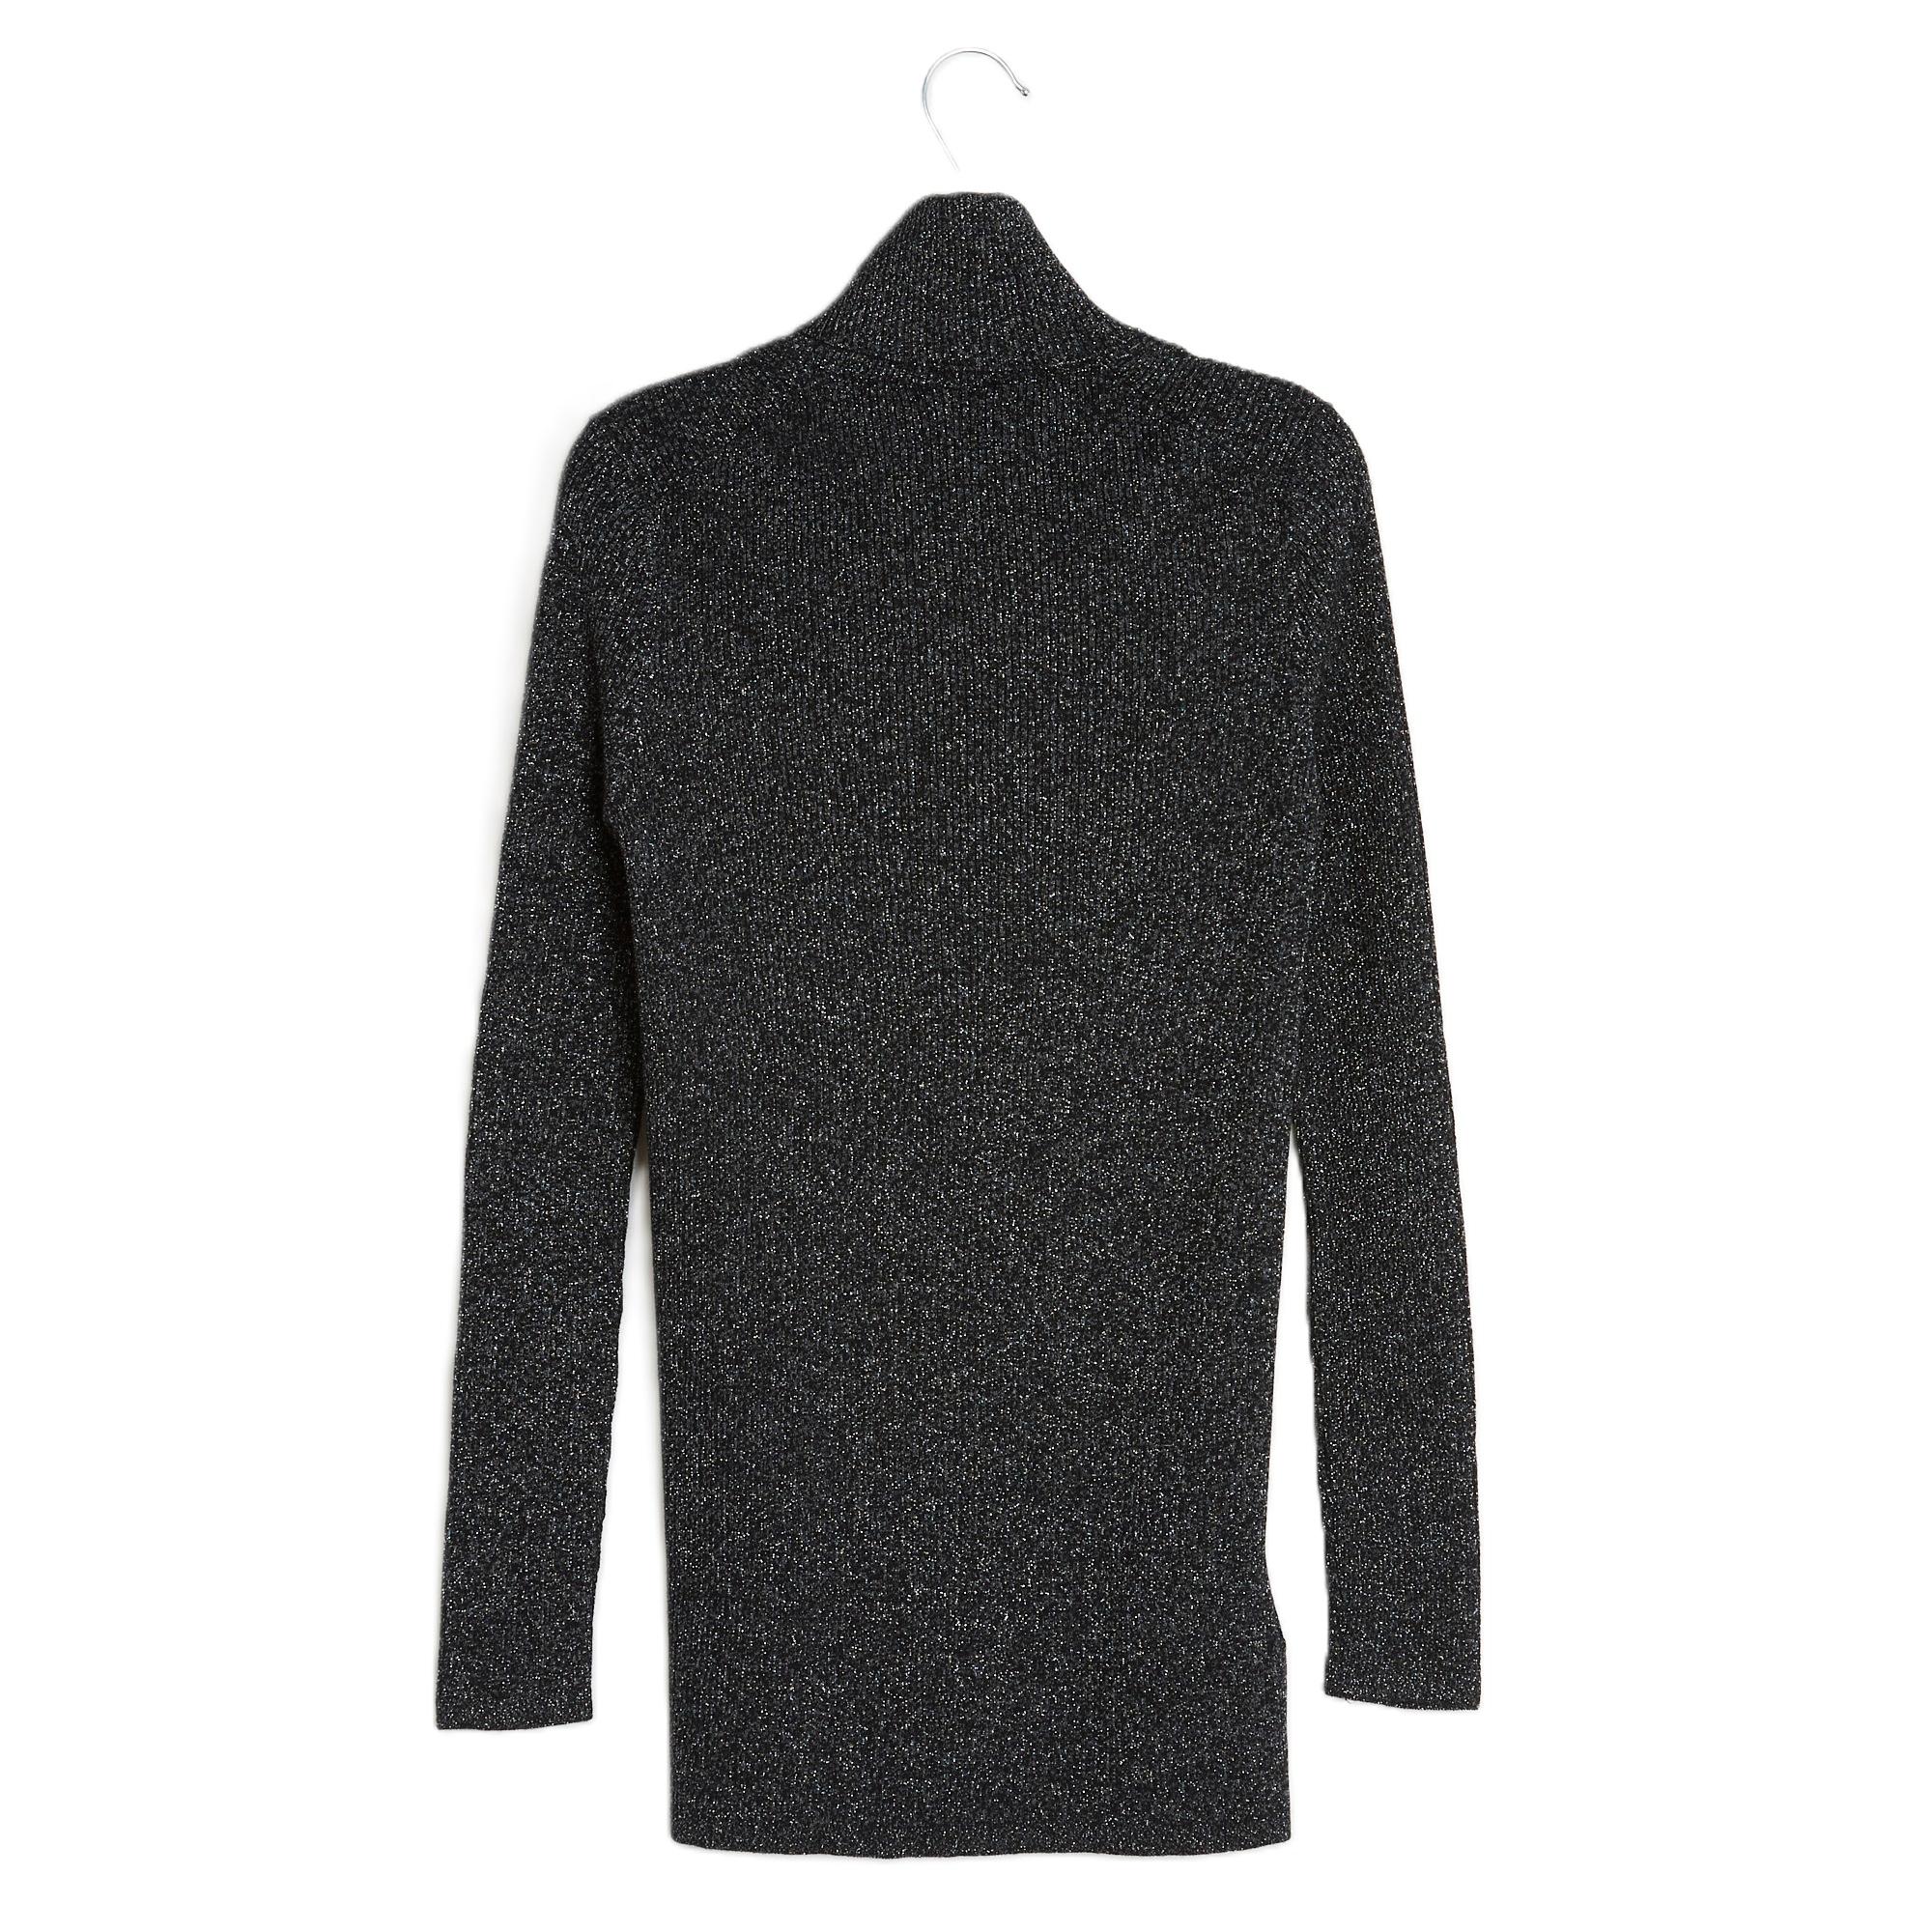 Women's or Men's Prada Top Sweater black silver FR40 IT44 For Sale